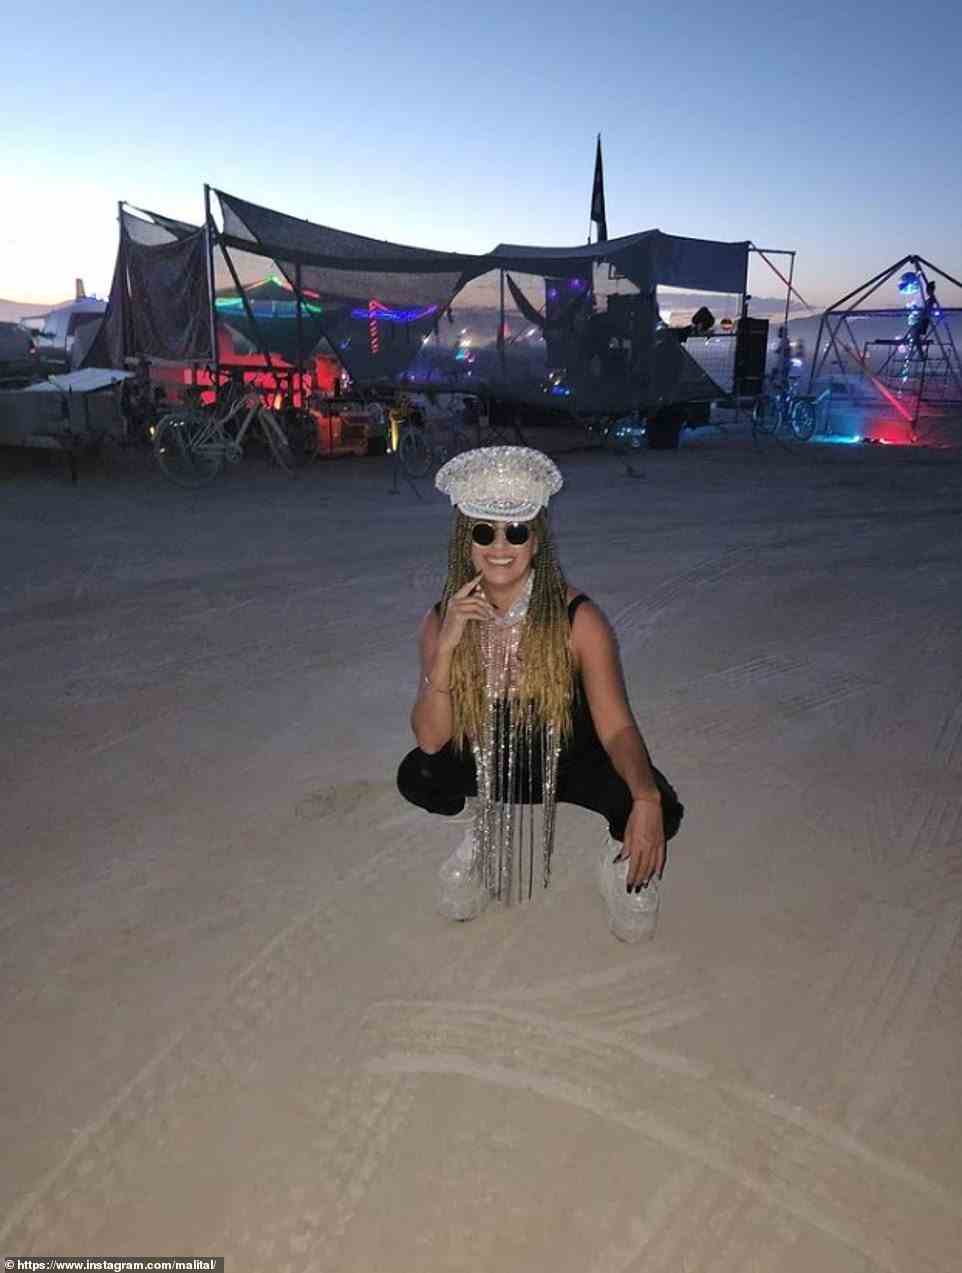 Die aufwändigen Outfits, oder deren Fehlen, sind oft ein großer Teil jedes Burning Man